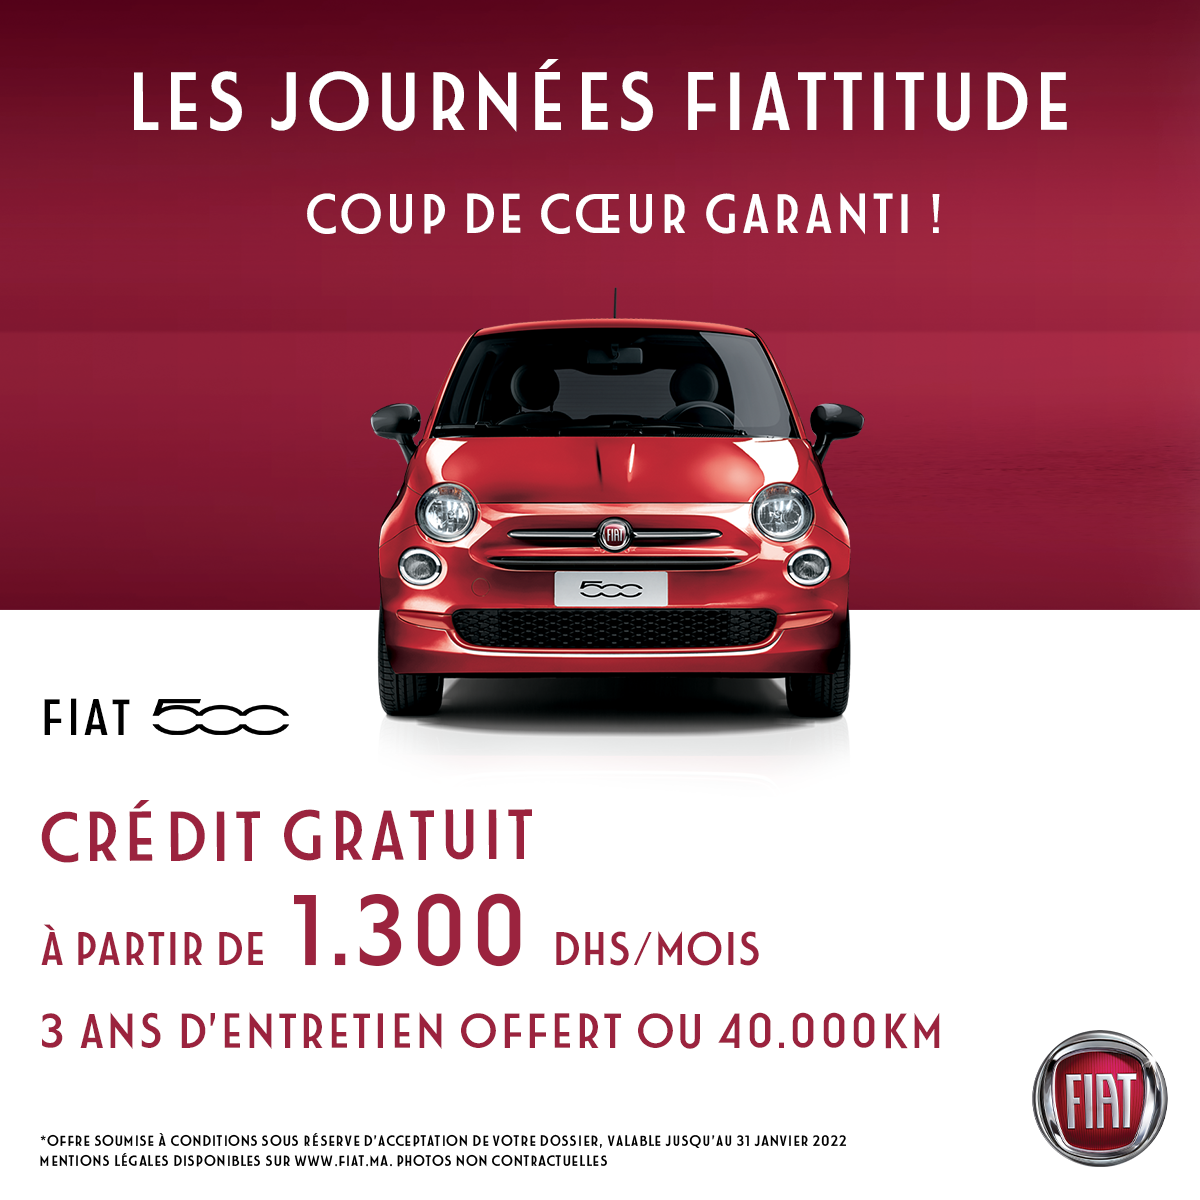 Profitez Fiat Maroc Fiat 500 Crédit Gratuit à Partir de 1300Dhs/mois